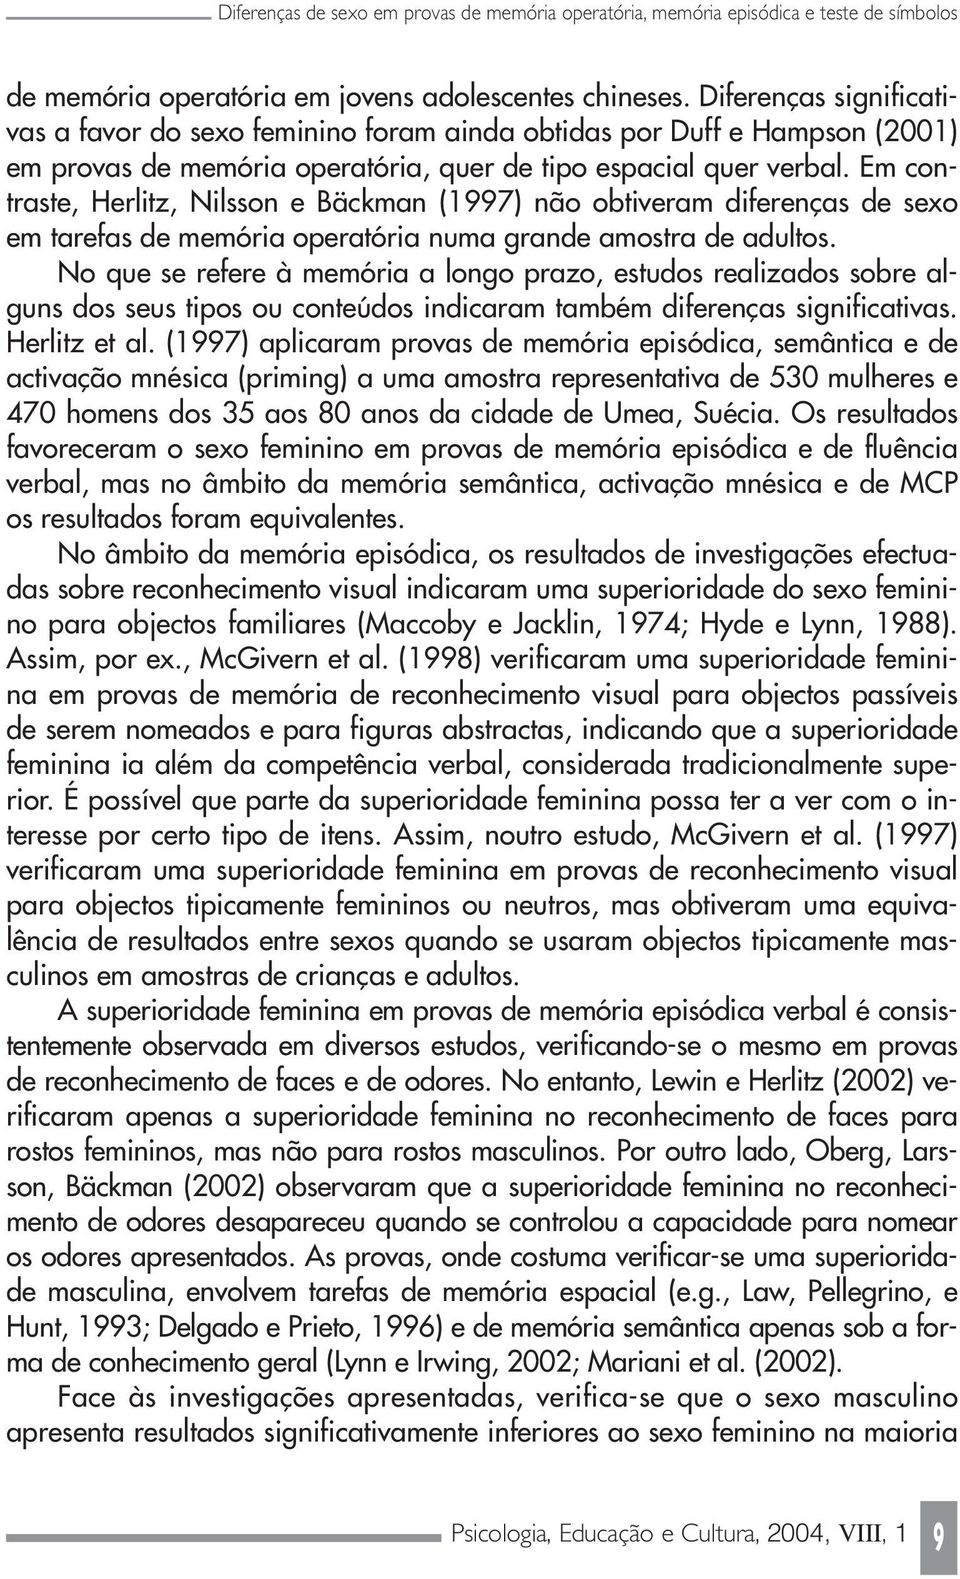 Em contraste, Herlitz, Nilsson e Bäckman (1997) não obtiveram diferenças de sexo em tarefas de memória operatória numa grande amostra de adultos.